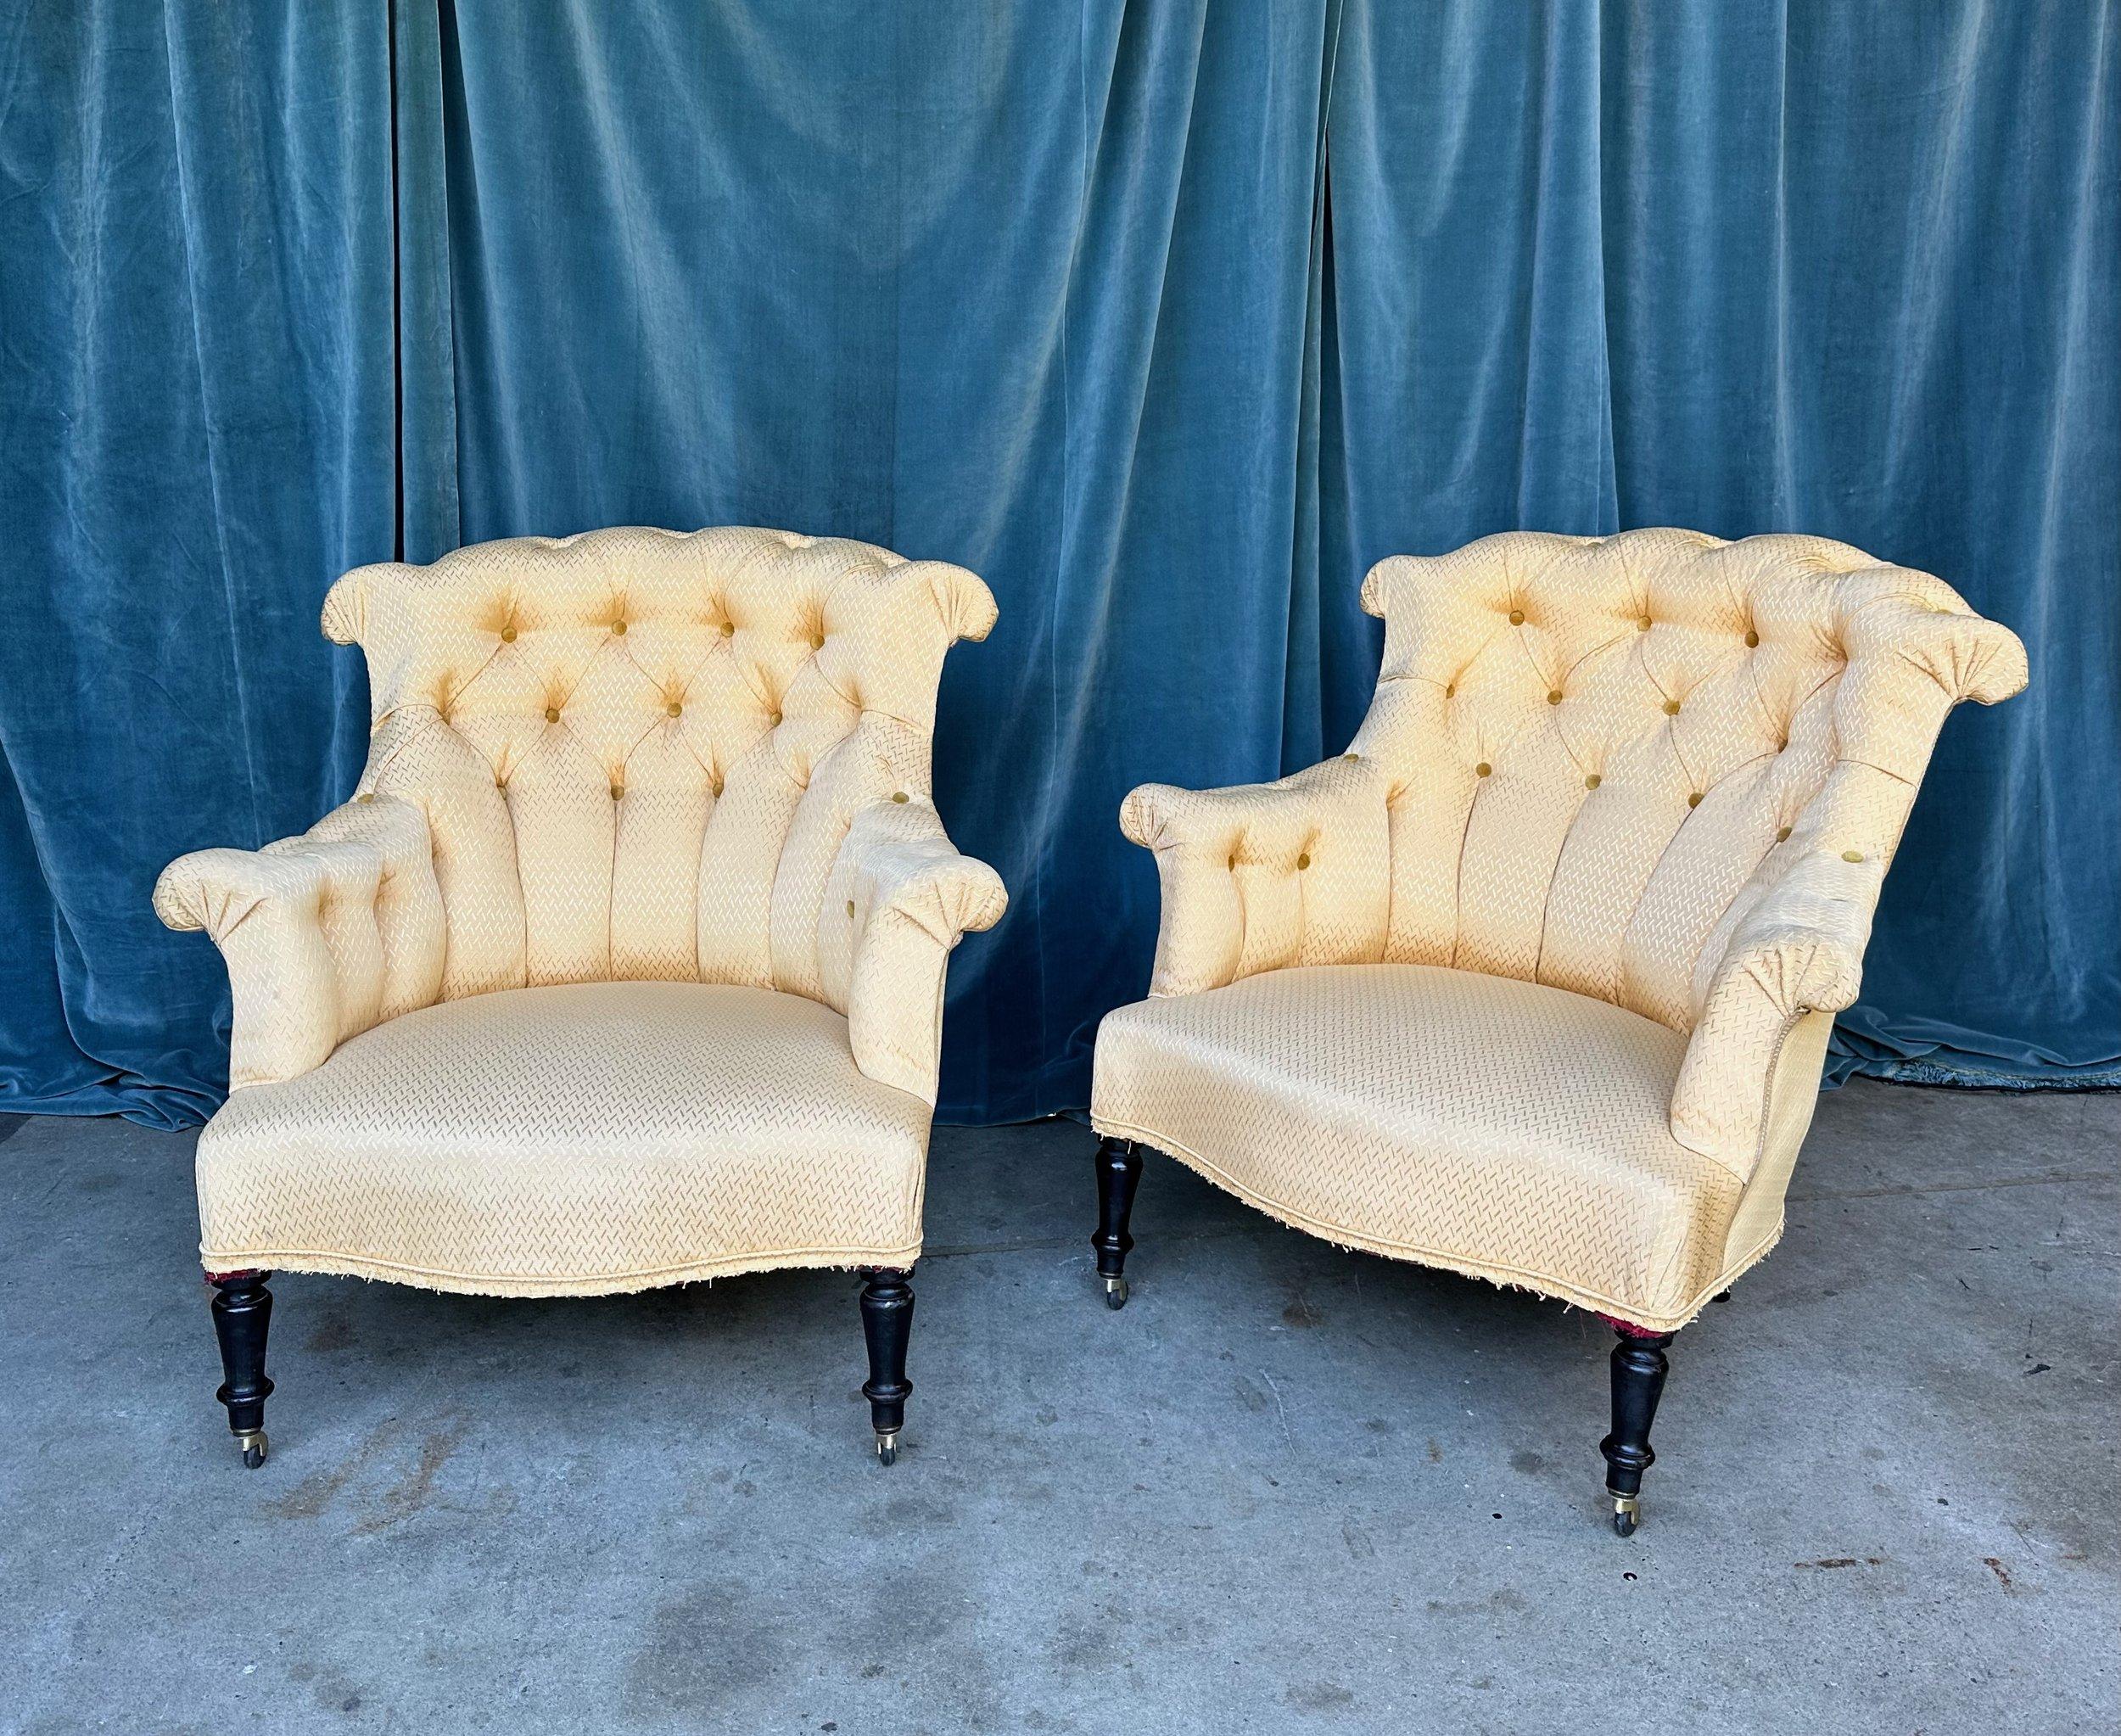 Une exquise paire de fauteuils français d'époque Napoléon III de la fin du 19ème siècle. Avec leur dossier touffeté et leur soutien lombaire intégré, ces chaises sont remarquablement confortables et parfaitement proportionnées. Bien que la